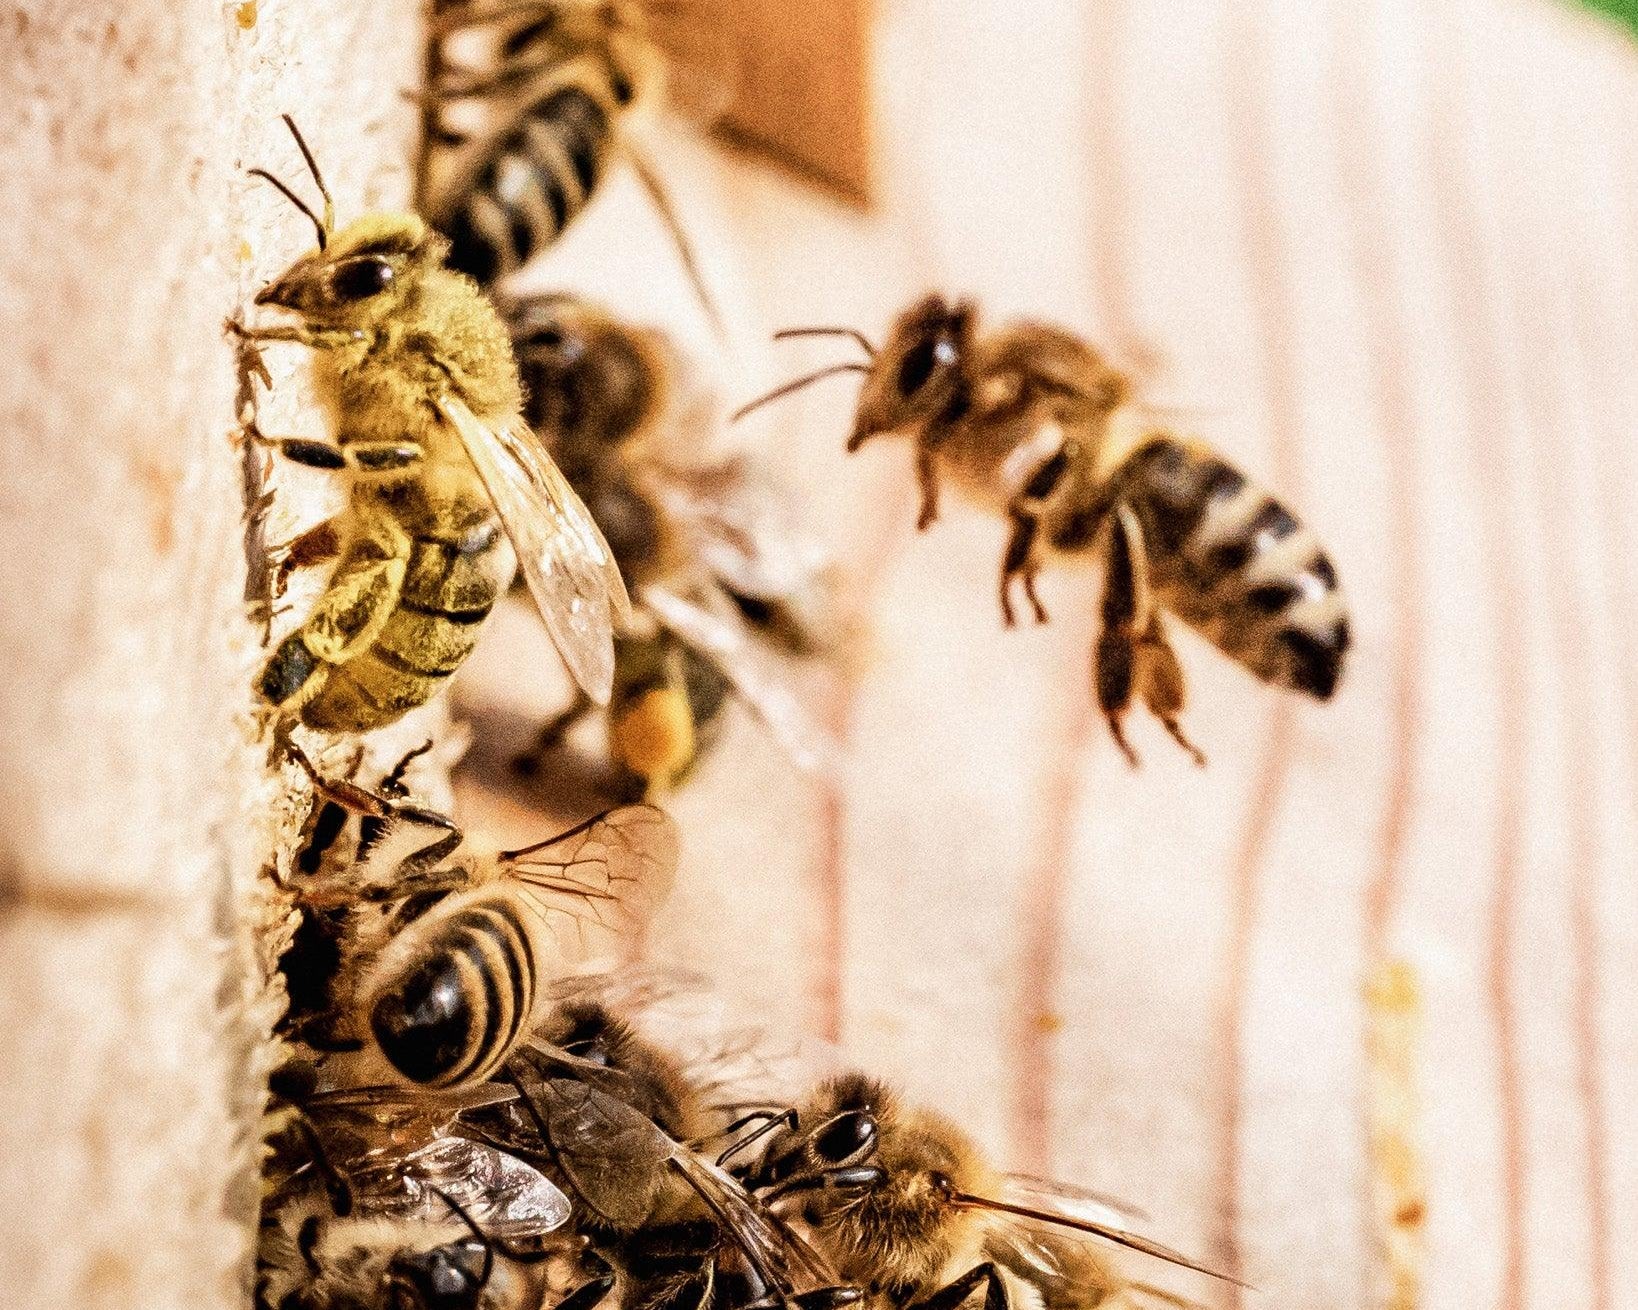 Důležitost ochrany včelích populací: Klíčová role včel v zachování biodiverzity - Davidova ekologická včelí farma